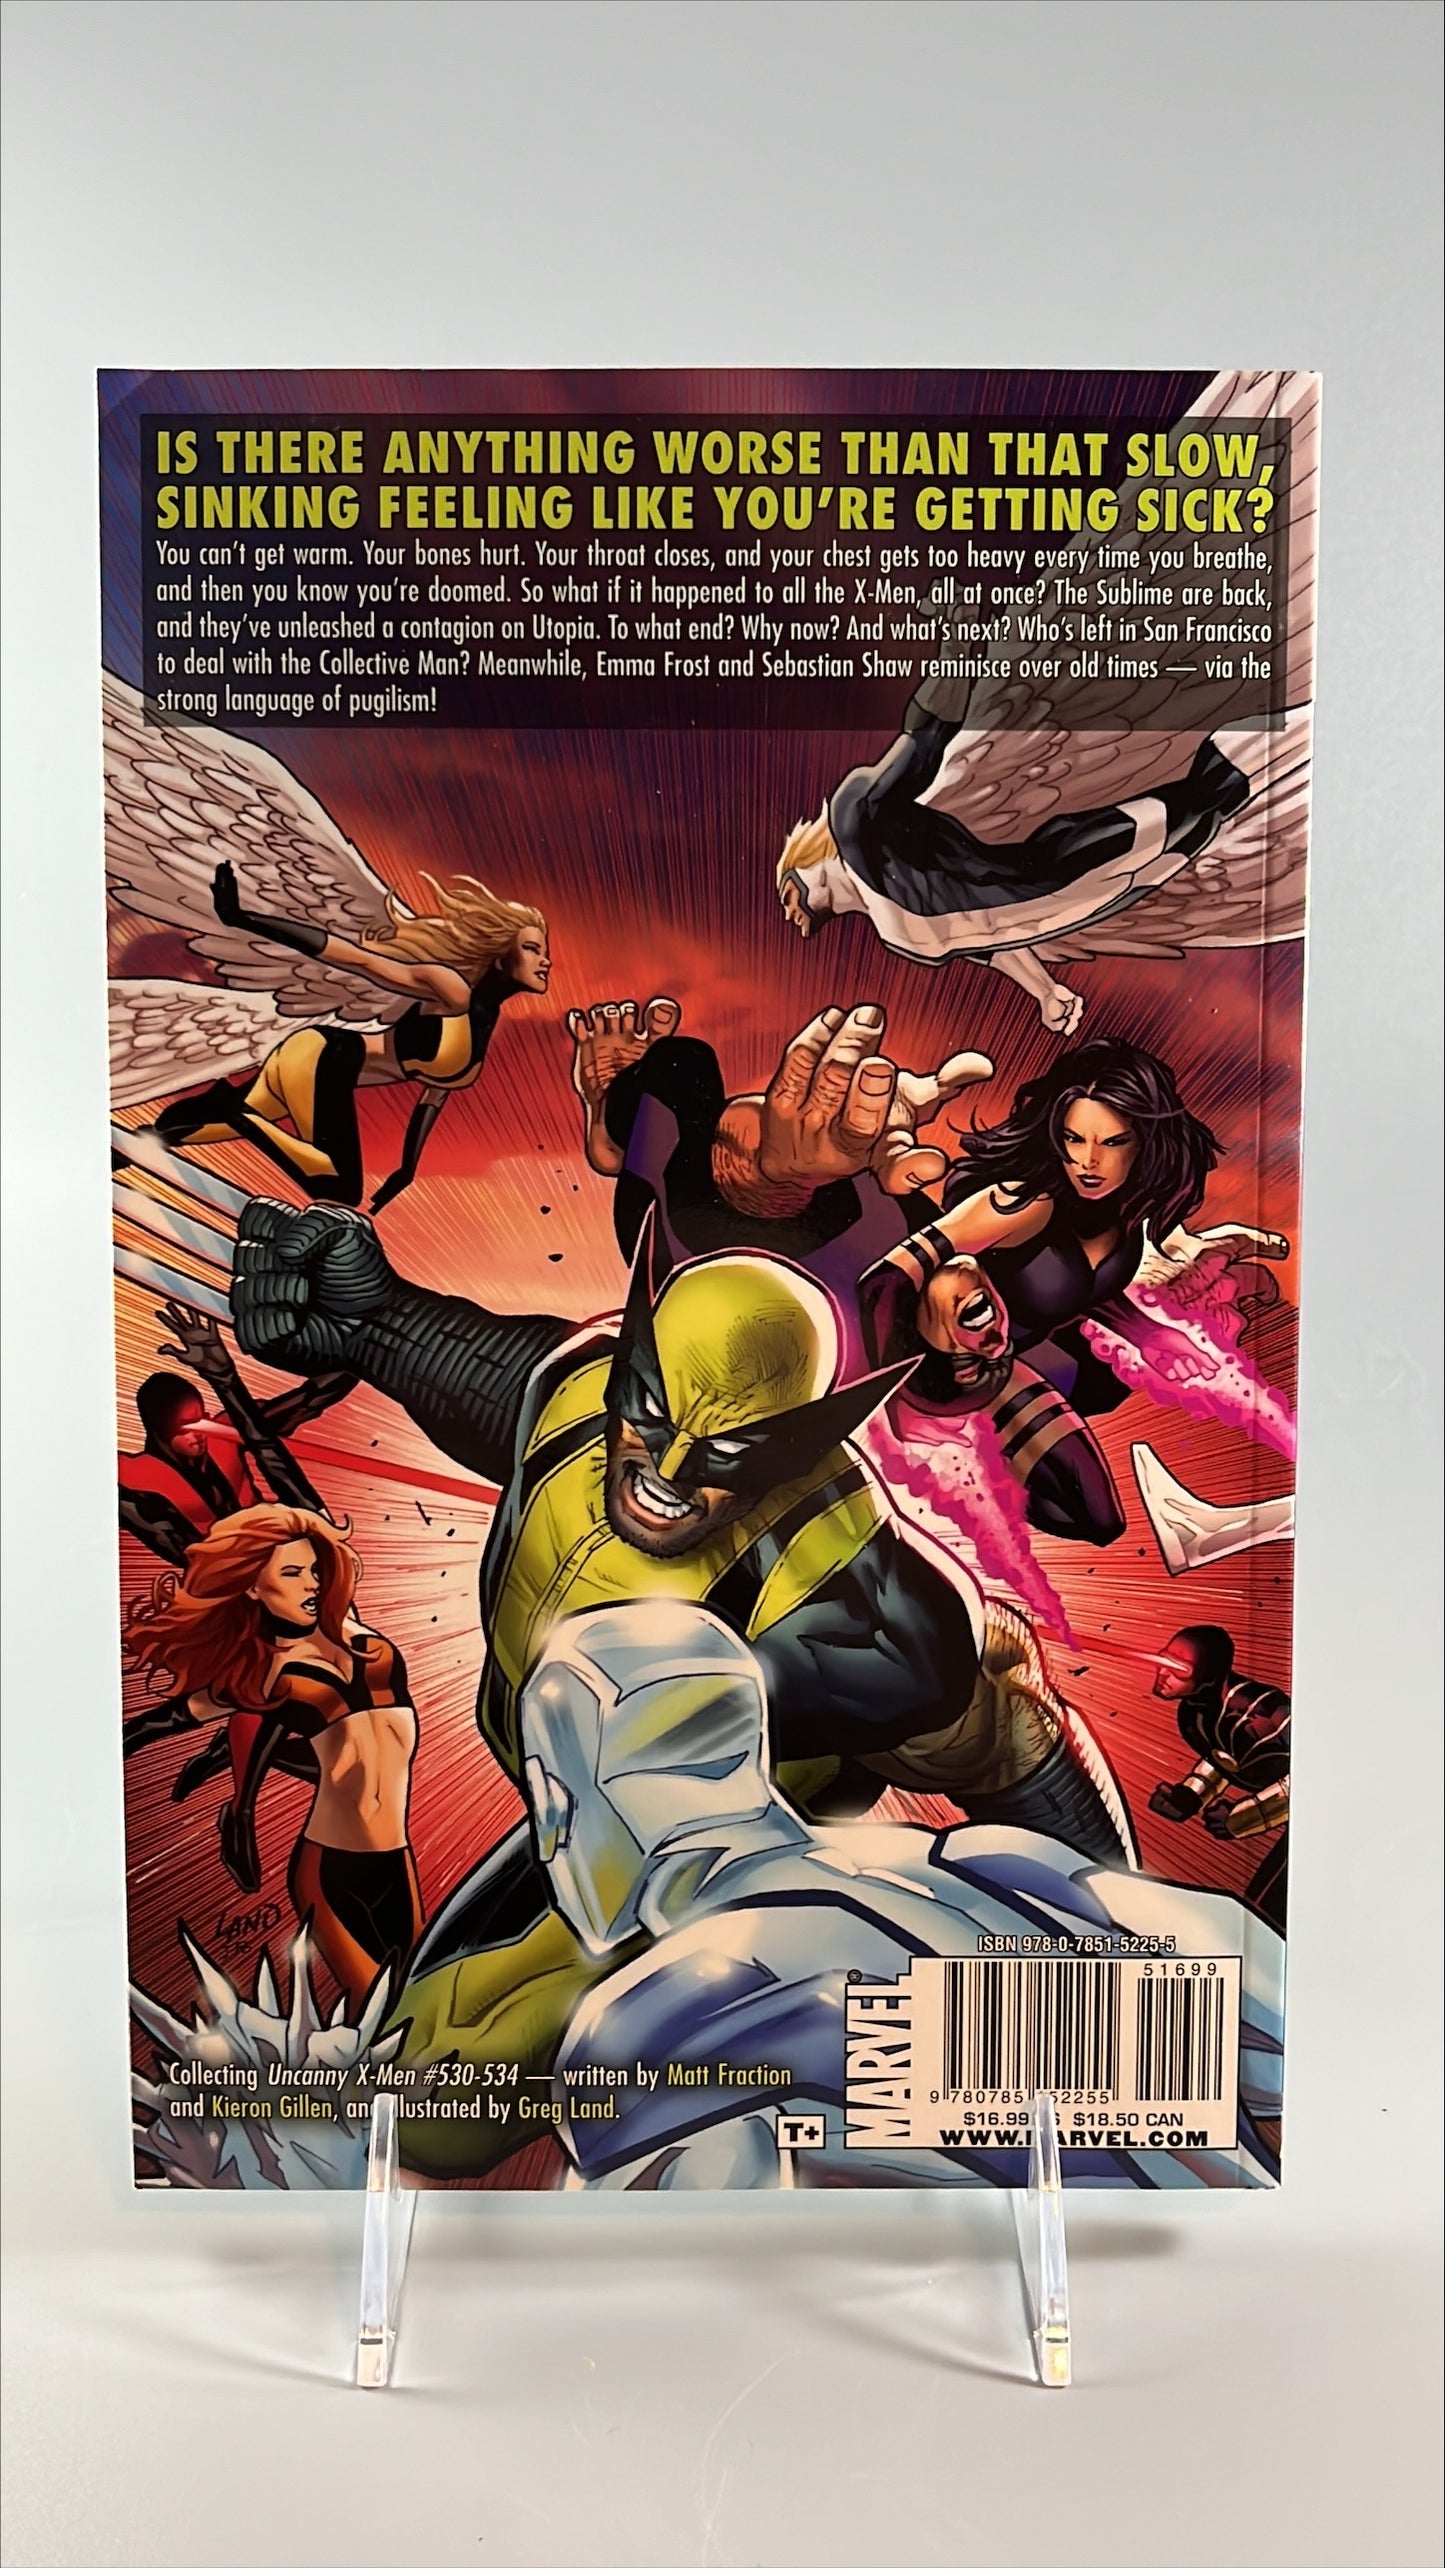 Uncanny X-Men: Quarantine